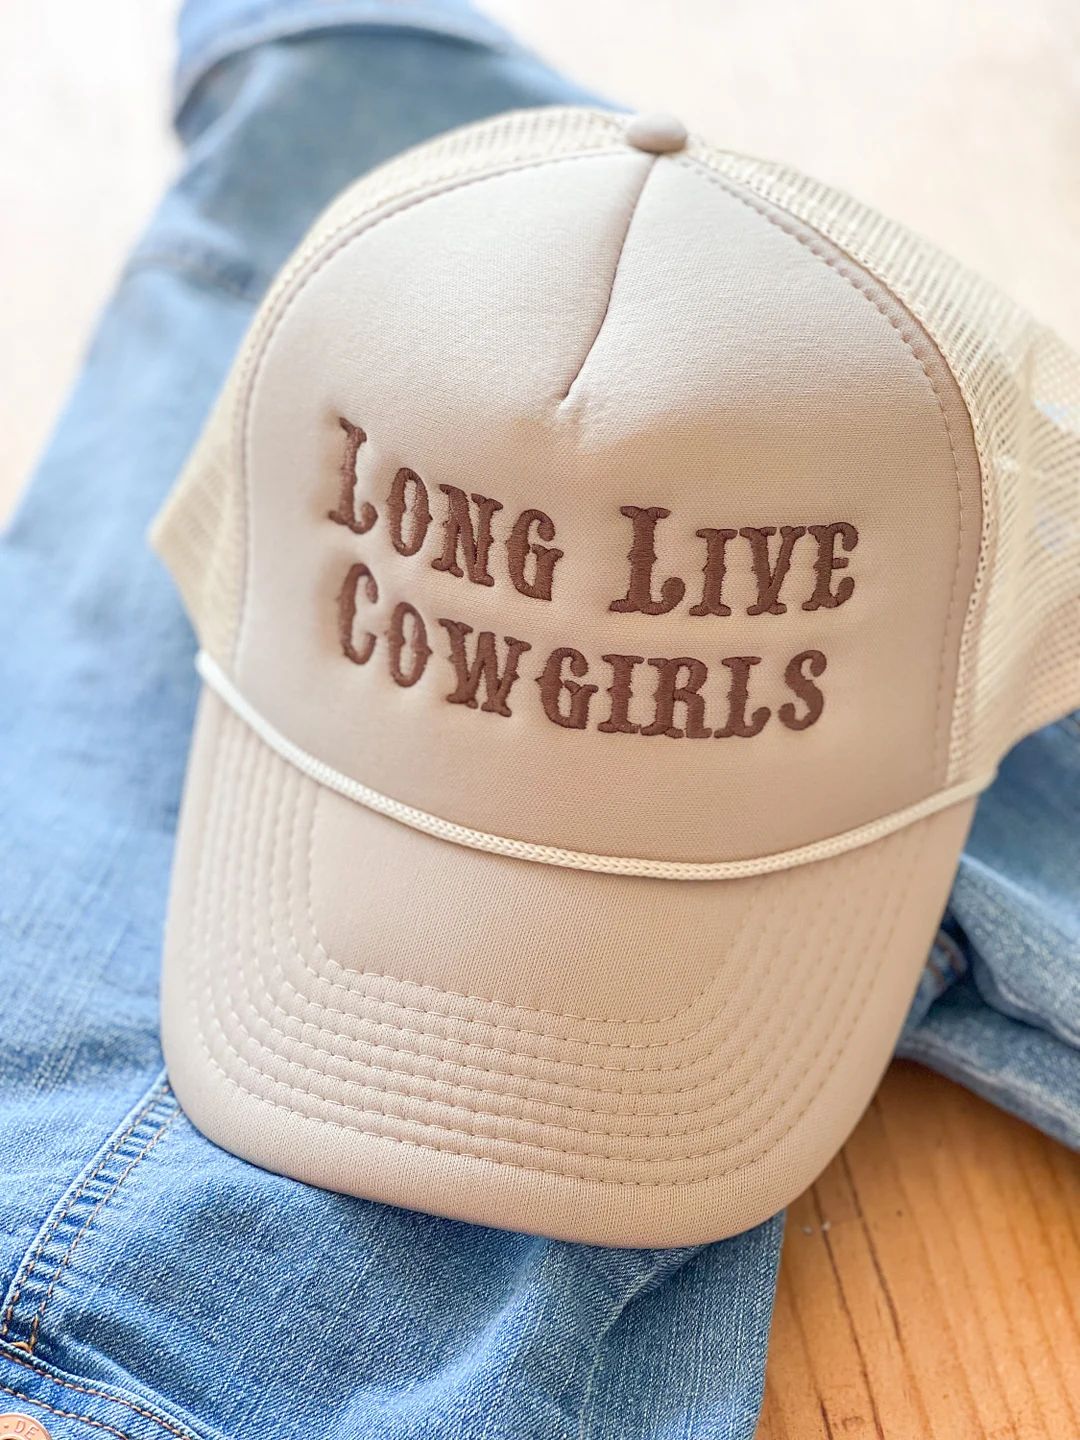 Long Live Cowgirls Trucker Hat Foam Vintage Trucker Hat Unisex Adult Size - Etsy | Etsy (US)